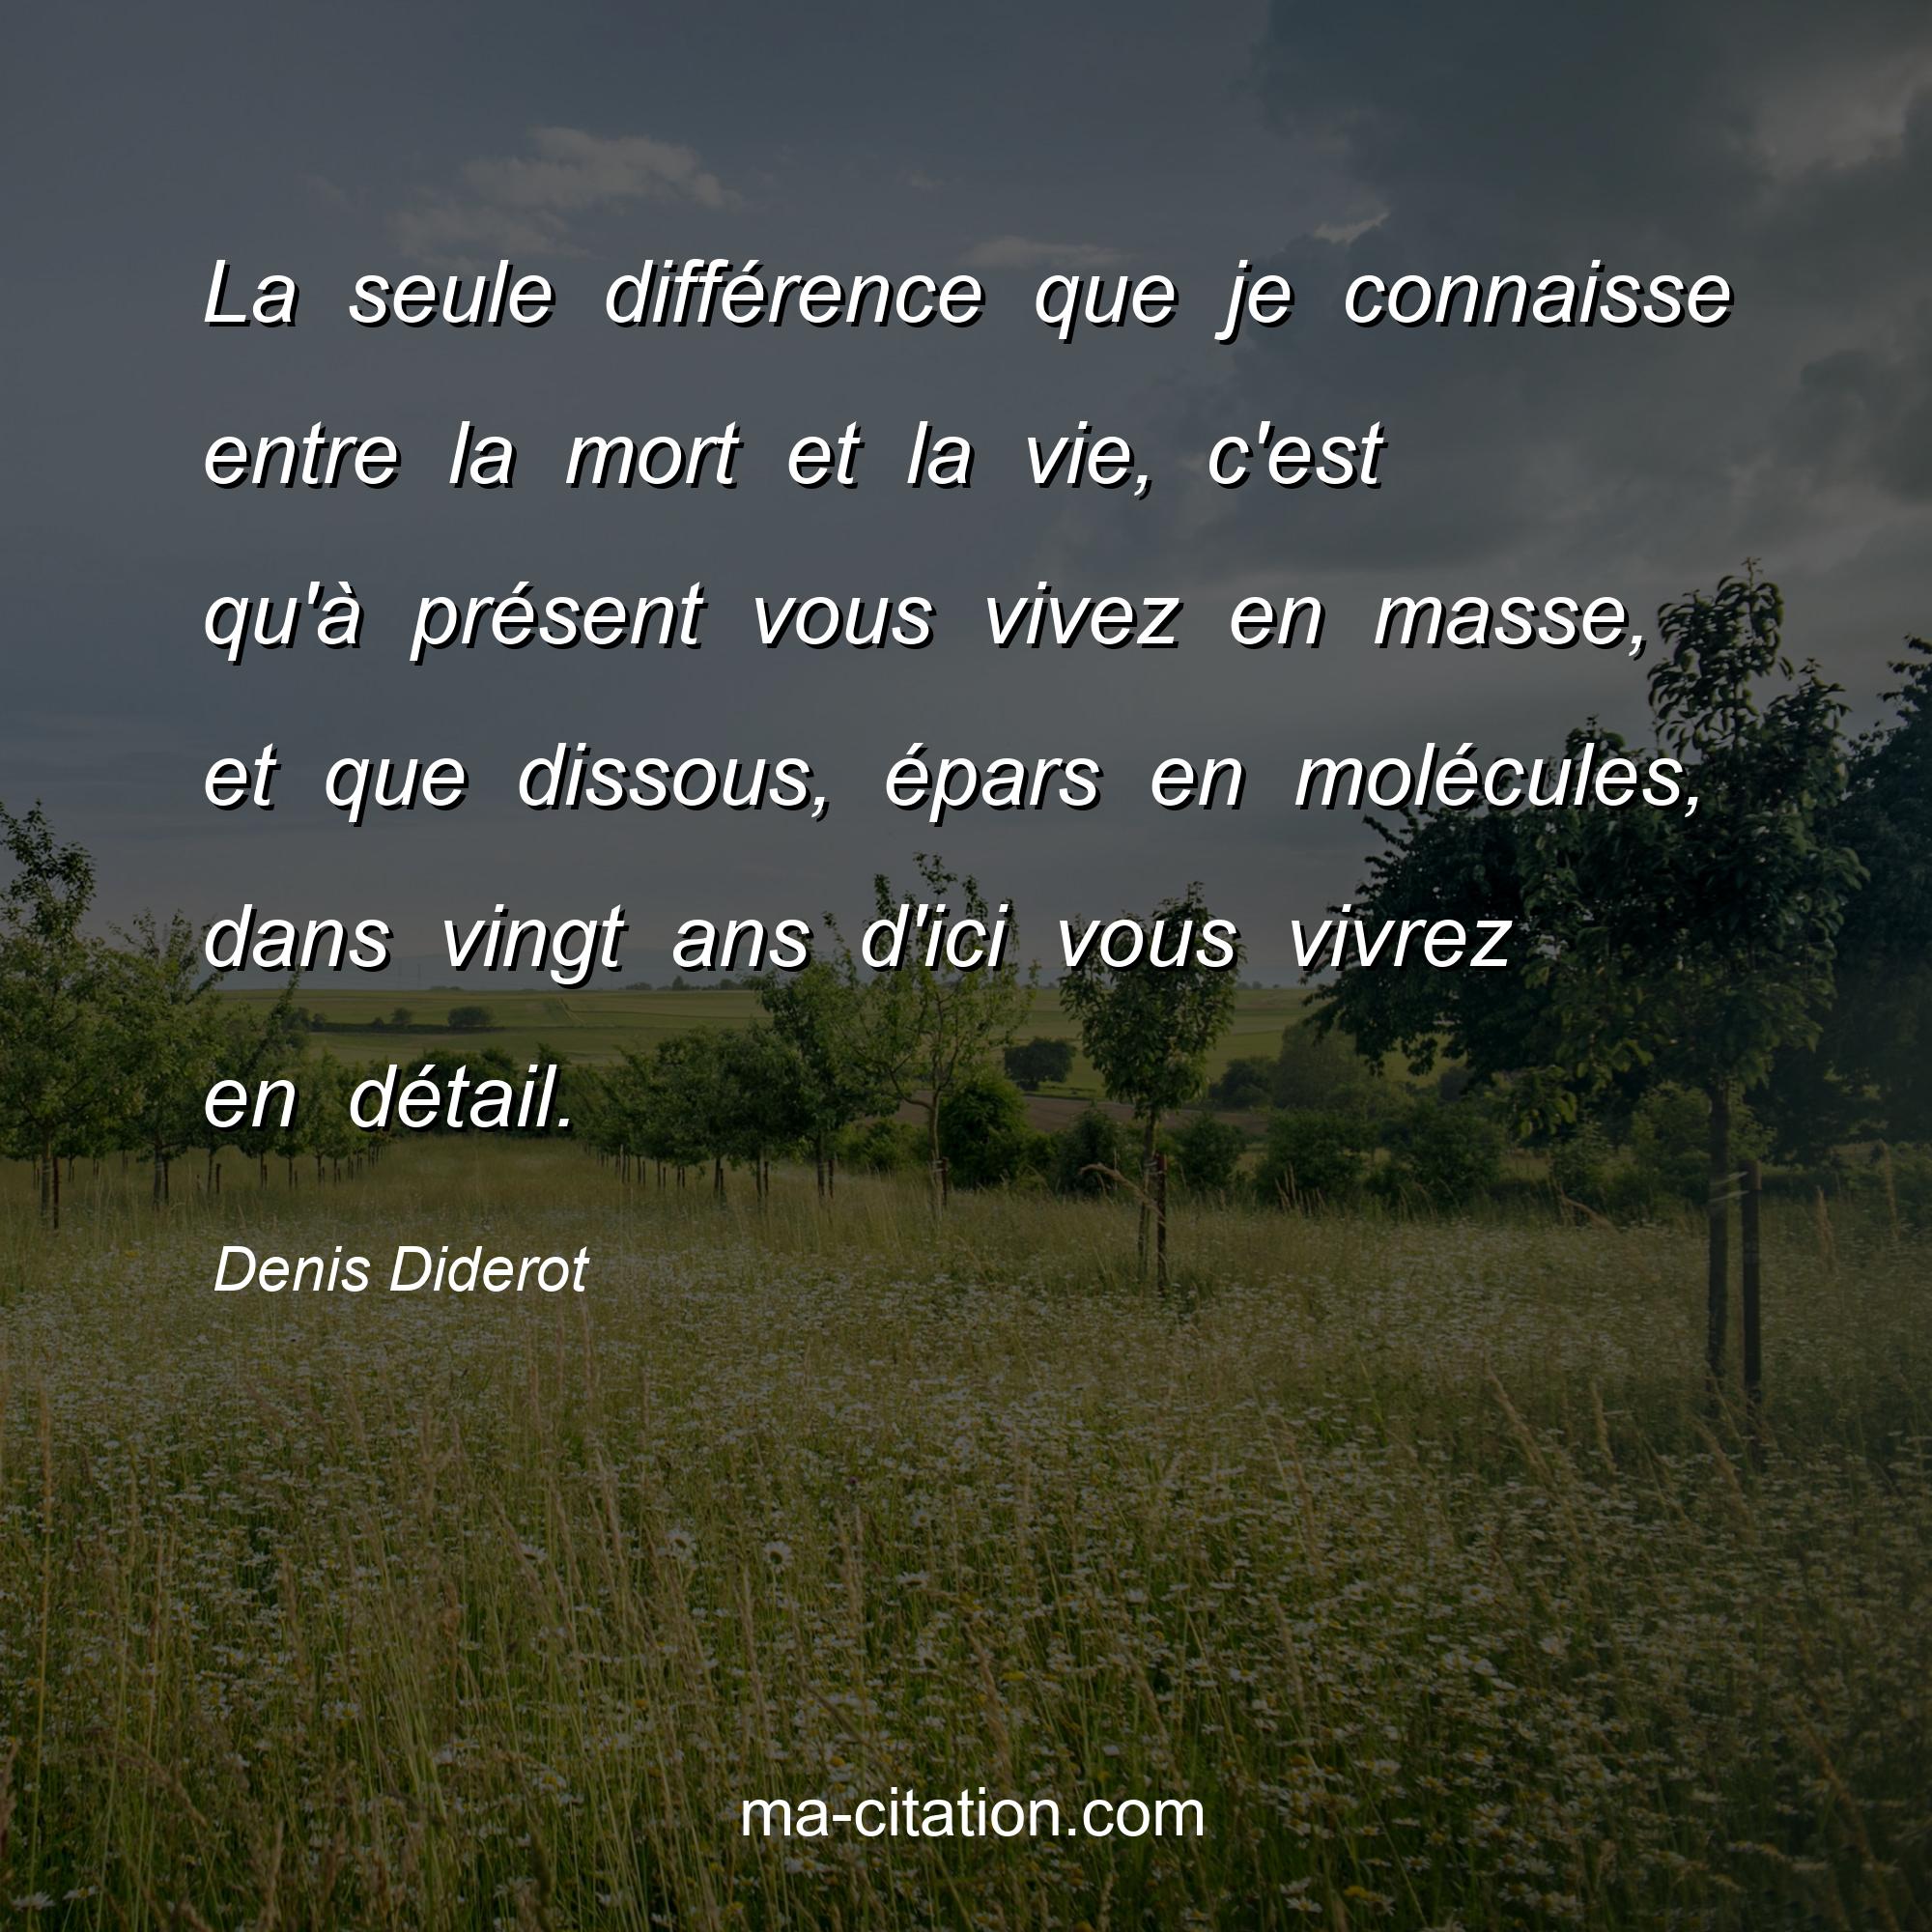 Denis Diderot : La seule différence que je connaisse entre la mort et la vie, c'est qu'à présent vous vivez en masse, et que dissous, épars en molécules, dans vingt ans d'ici vous vivrez en détail.